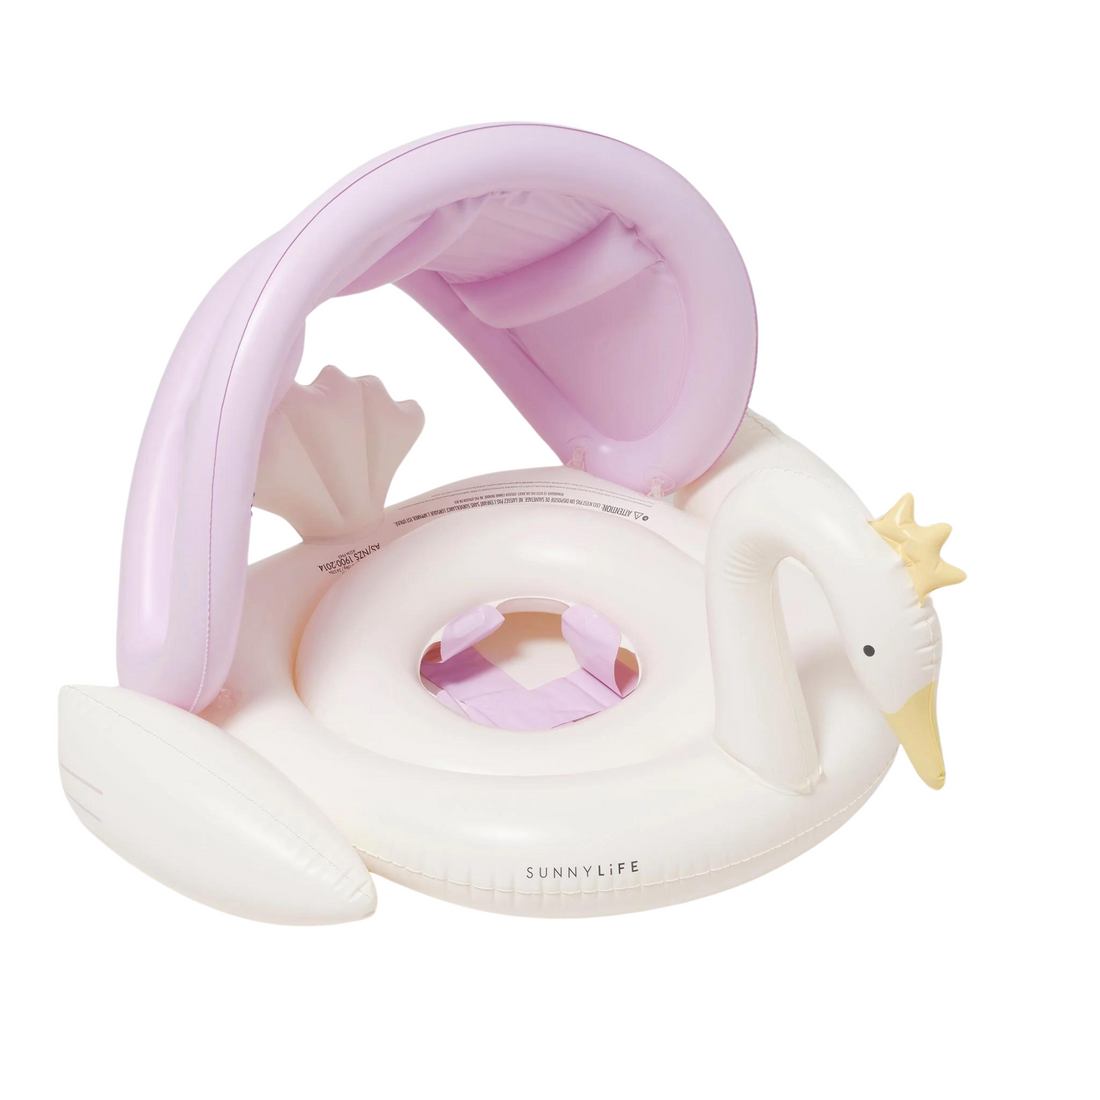 Baby float - Princess Swan Multi